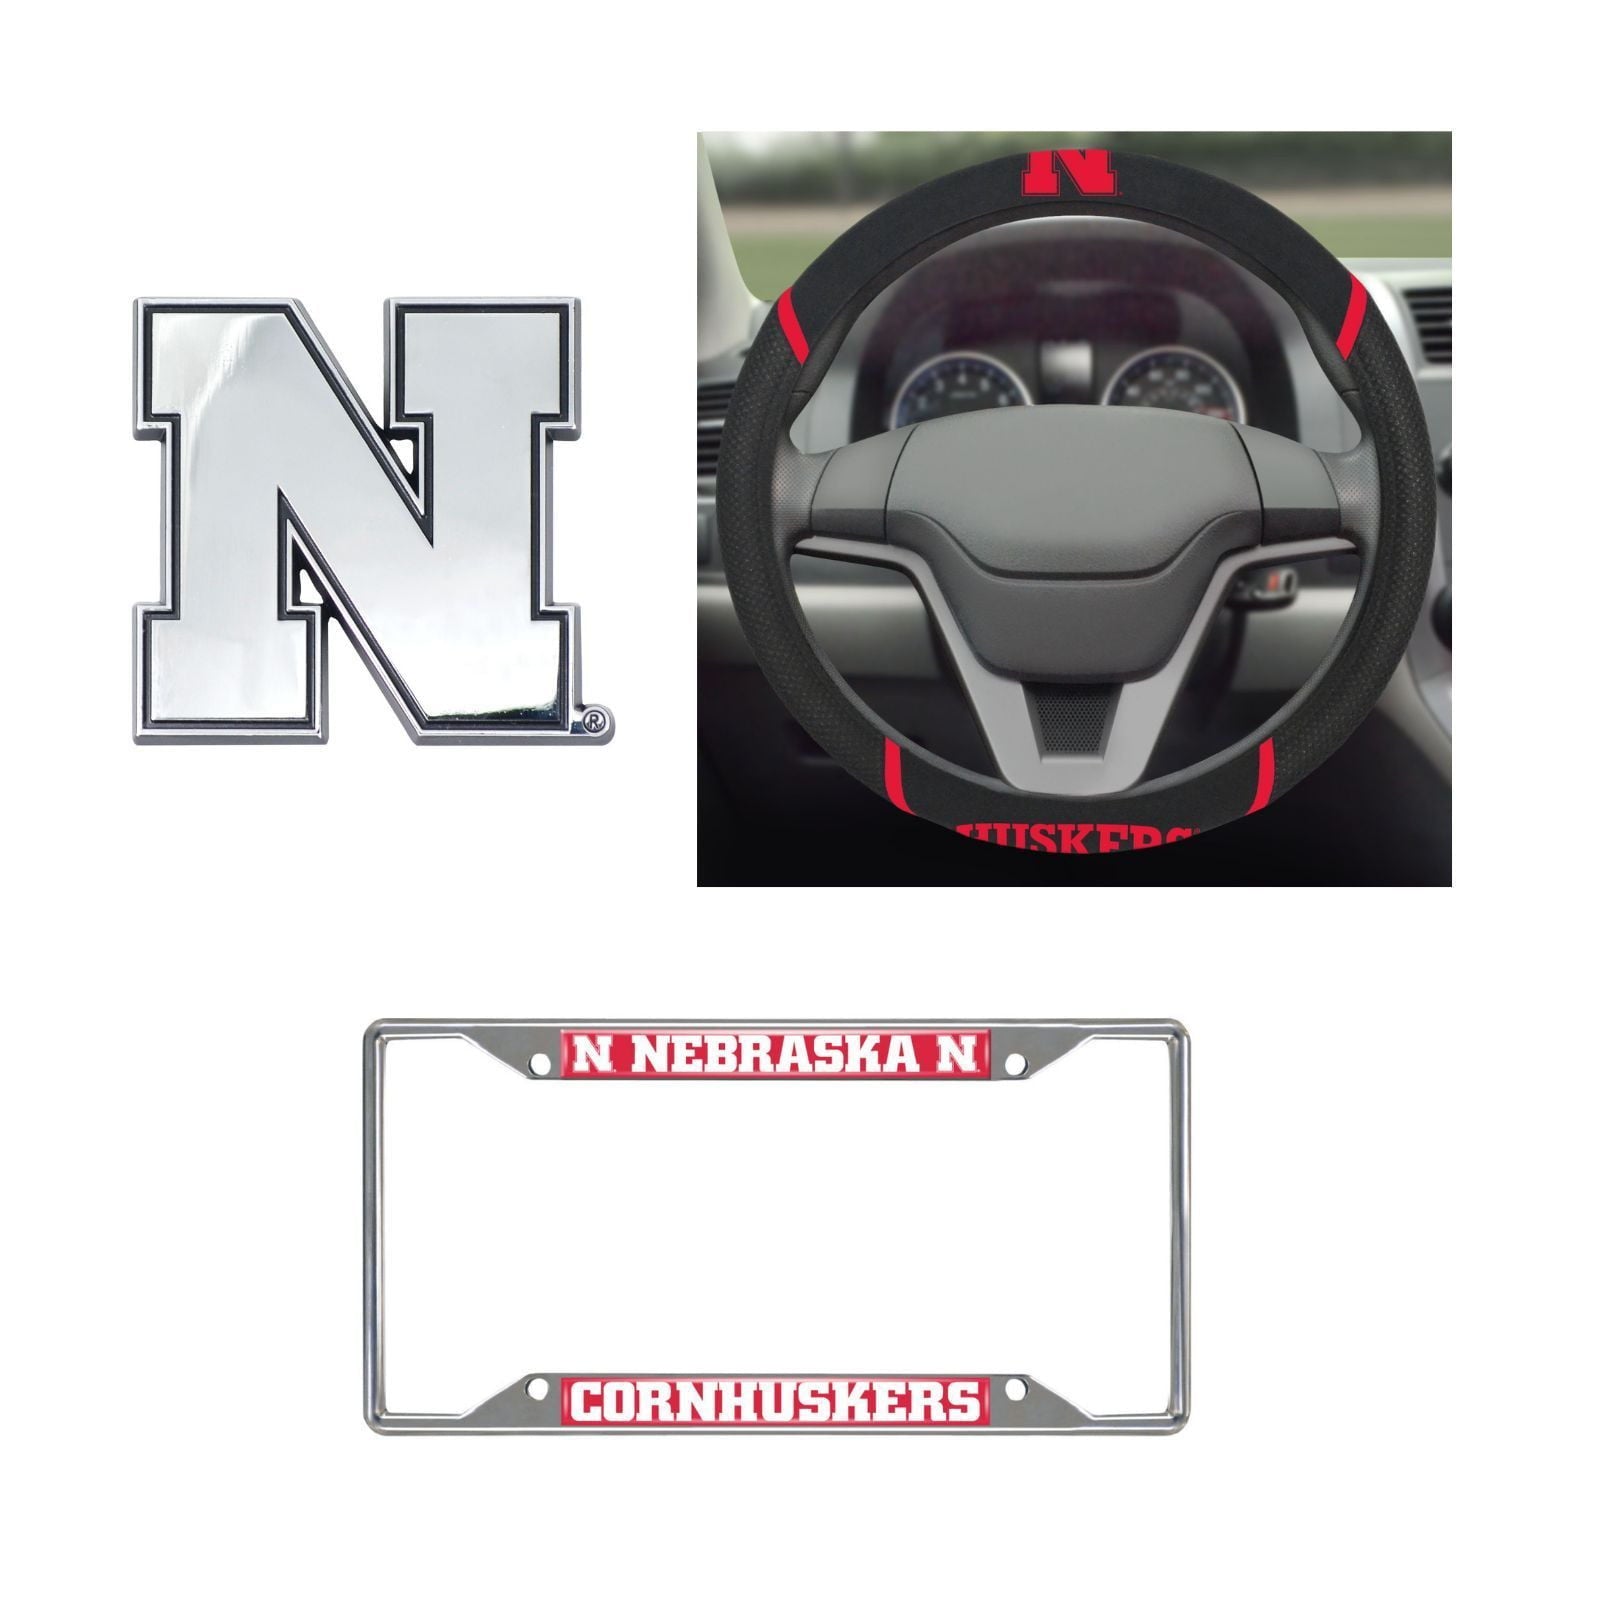 Nebraska Cornhuskers Steering Wheel Cover, License Plate Frame, 3D Chrome Emblem